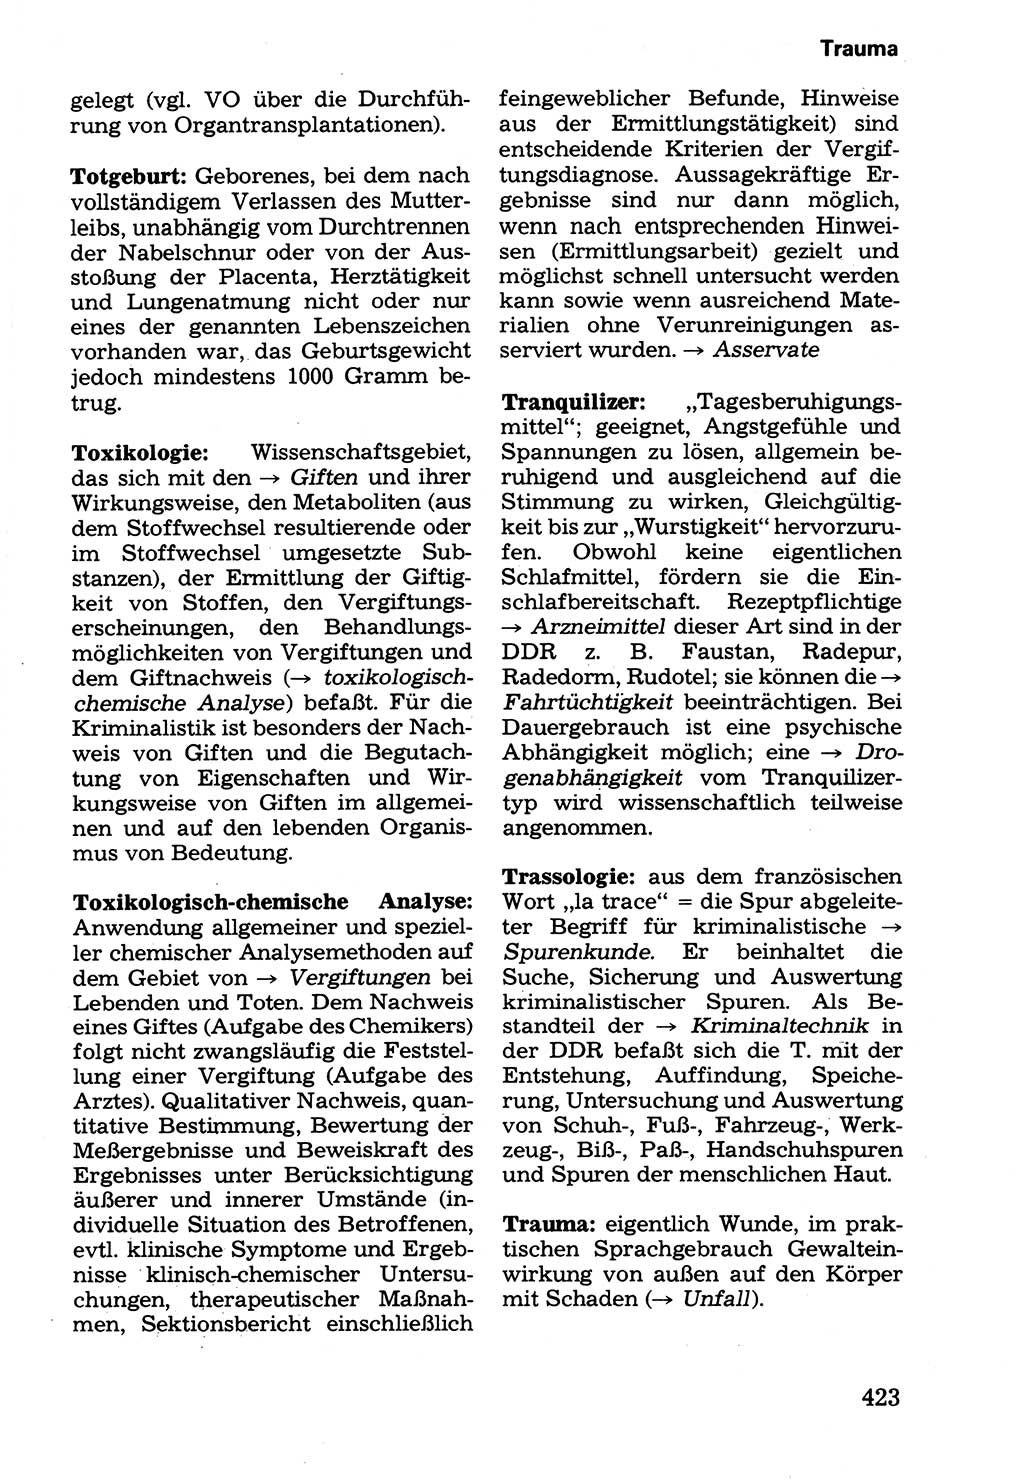 Wörterbuch der sozialistischen Kriminalistik [Deutsche Demokratische Republik (DDR)] 1981, Seite 423 (Wb. soz. Krim. DDR 1981, S. 423)